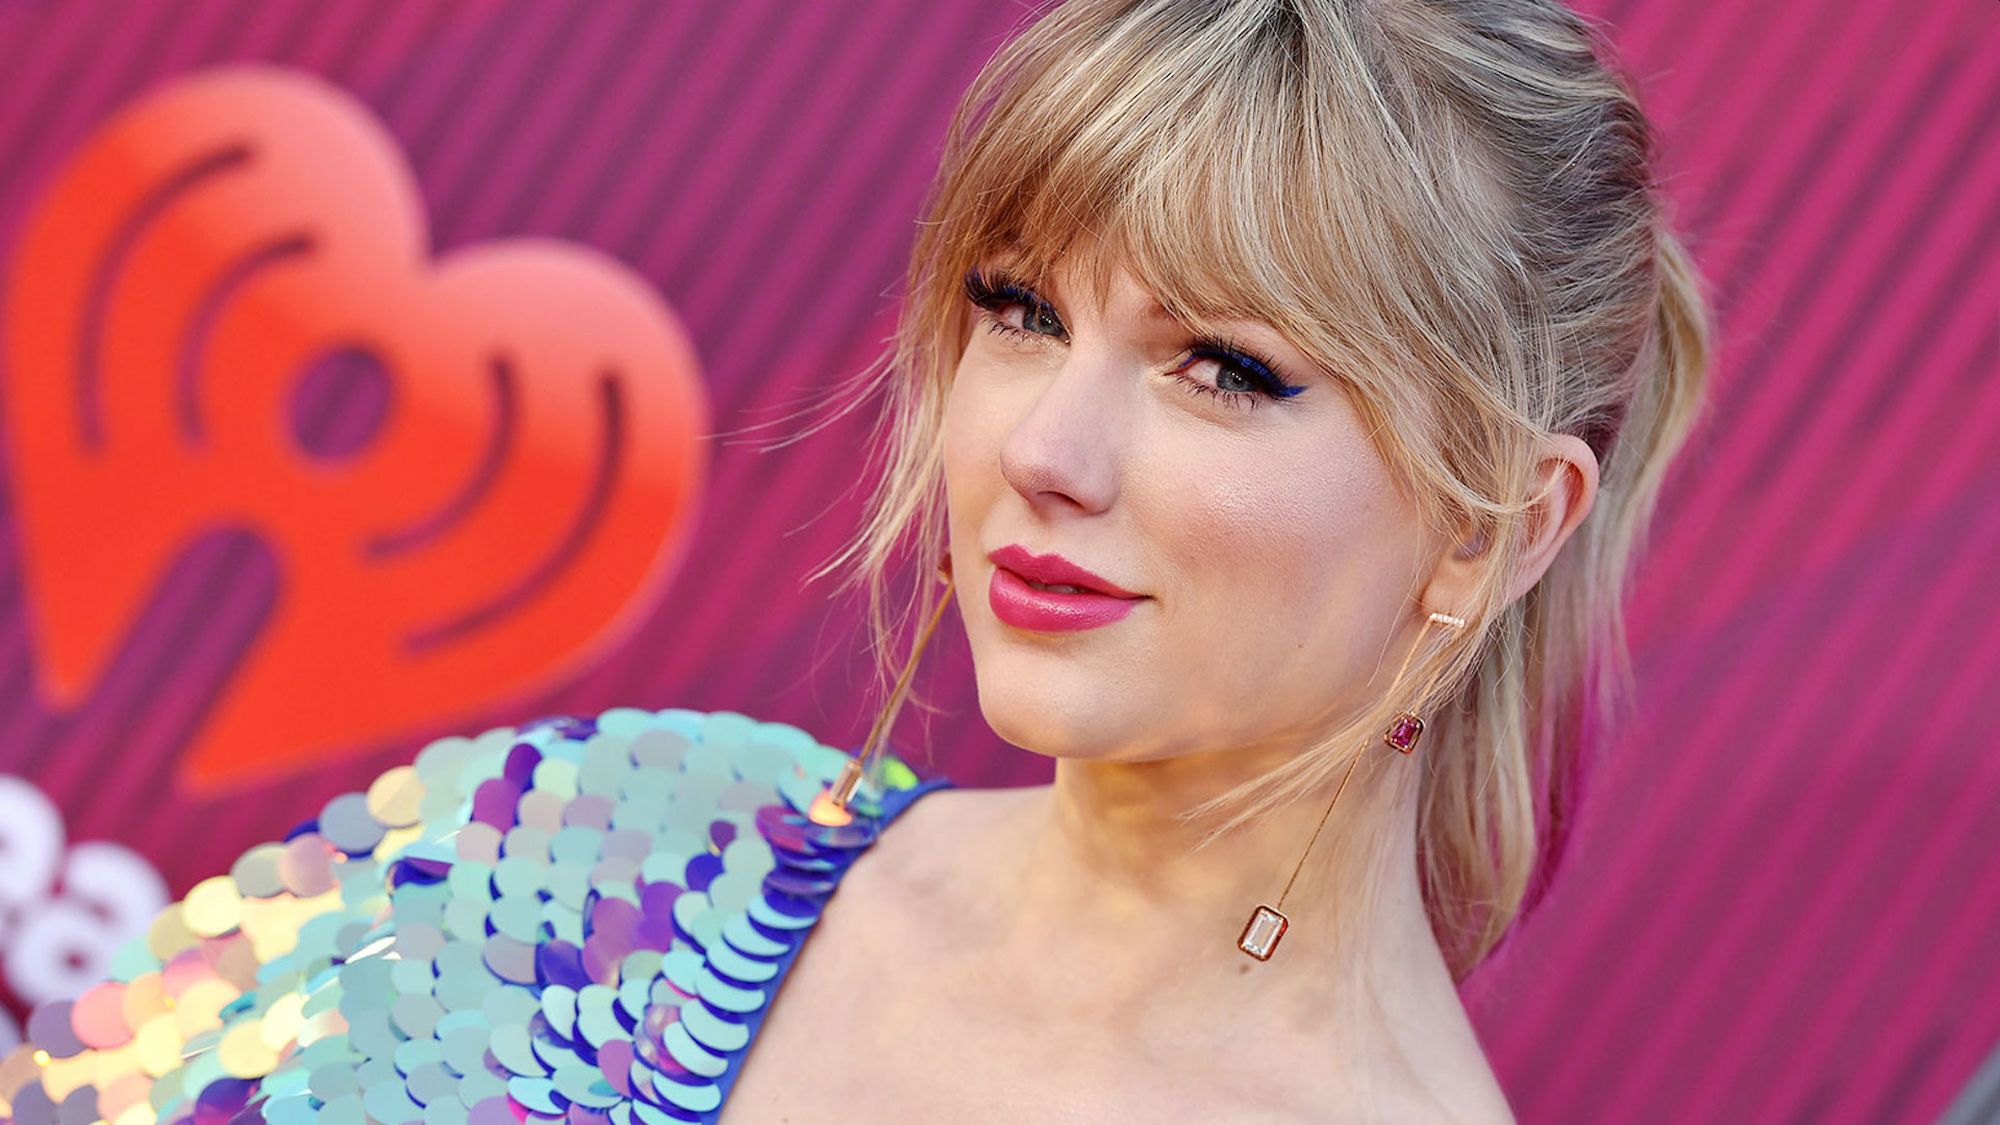 Lover di Taylor Swift: significato, testo e traduzione